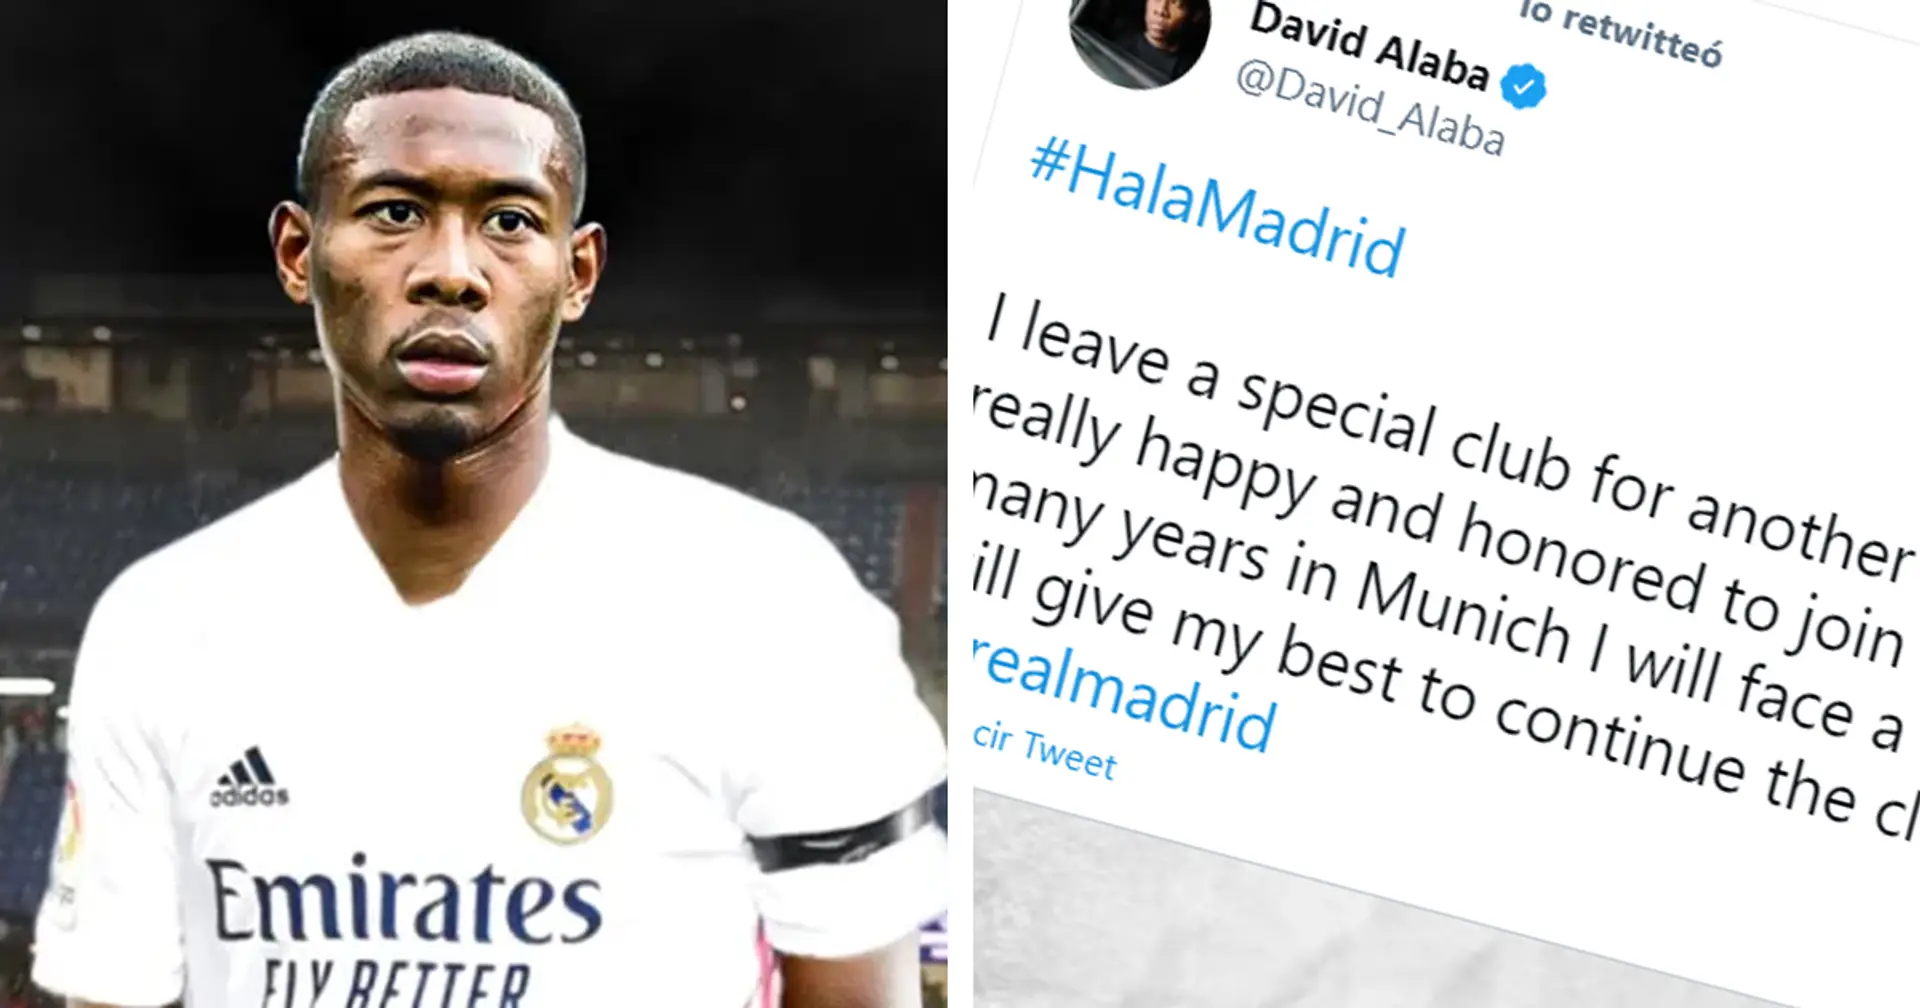 'Daré lo mejor de mí para continuar la especial historia del club': las primeras palabras de Alaba como nuevo jugador del Madrid